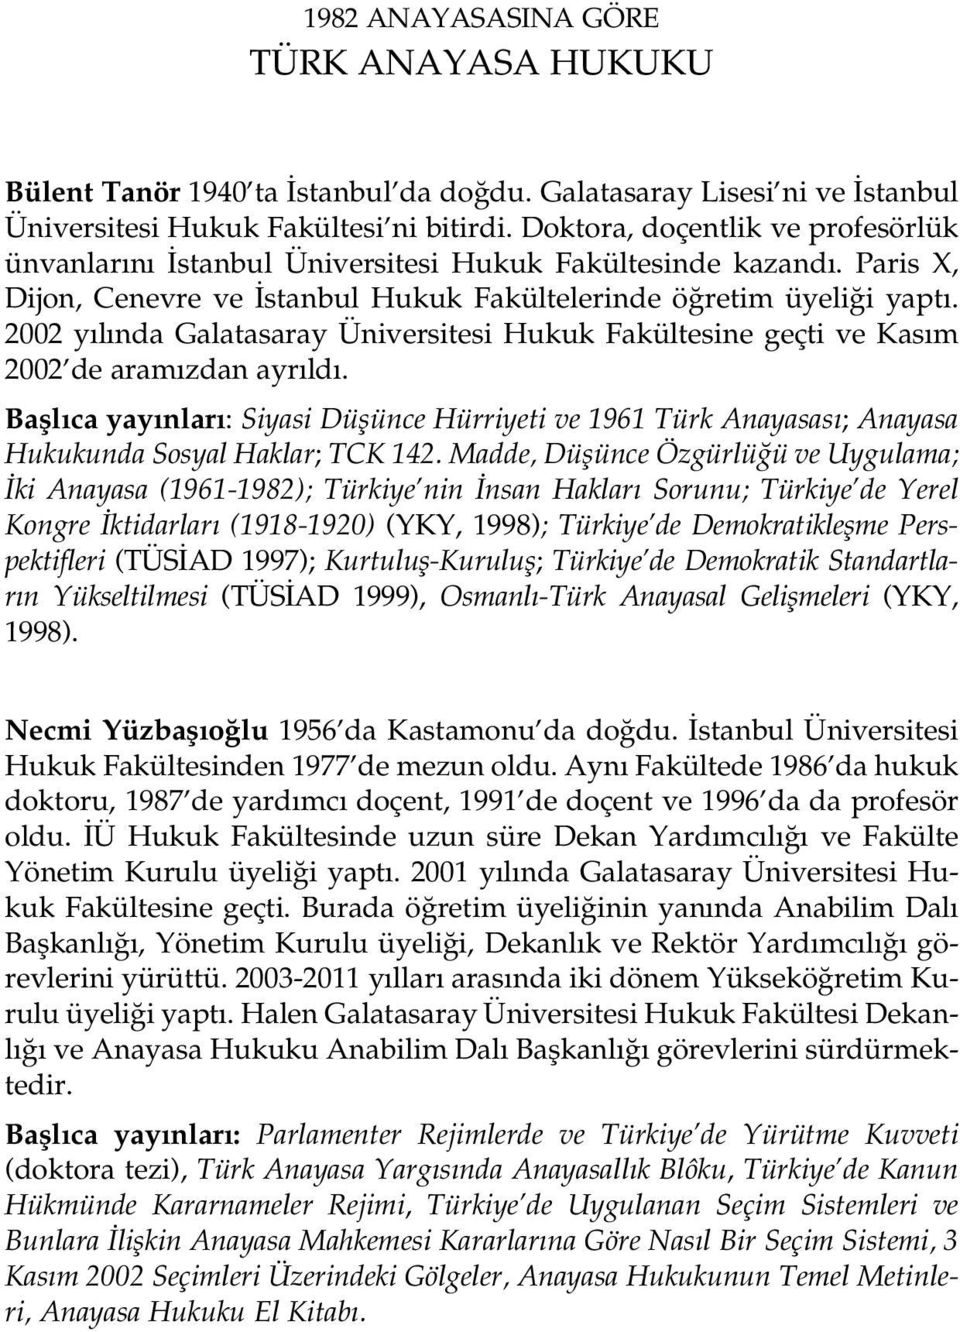 2002 y l nda Galatasaray Üniversitesi Hukuk Fakültesine geçti ve Kas m 2002 de aram zdan ayr ld.